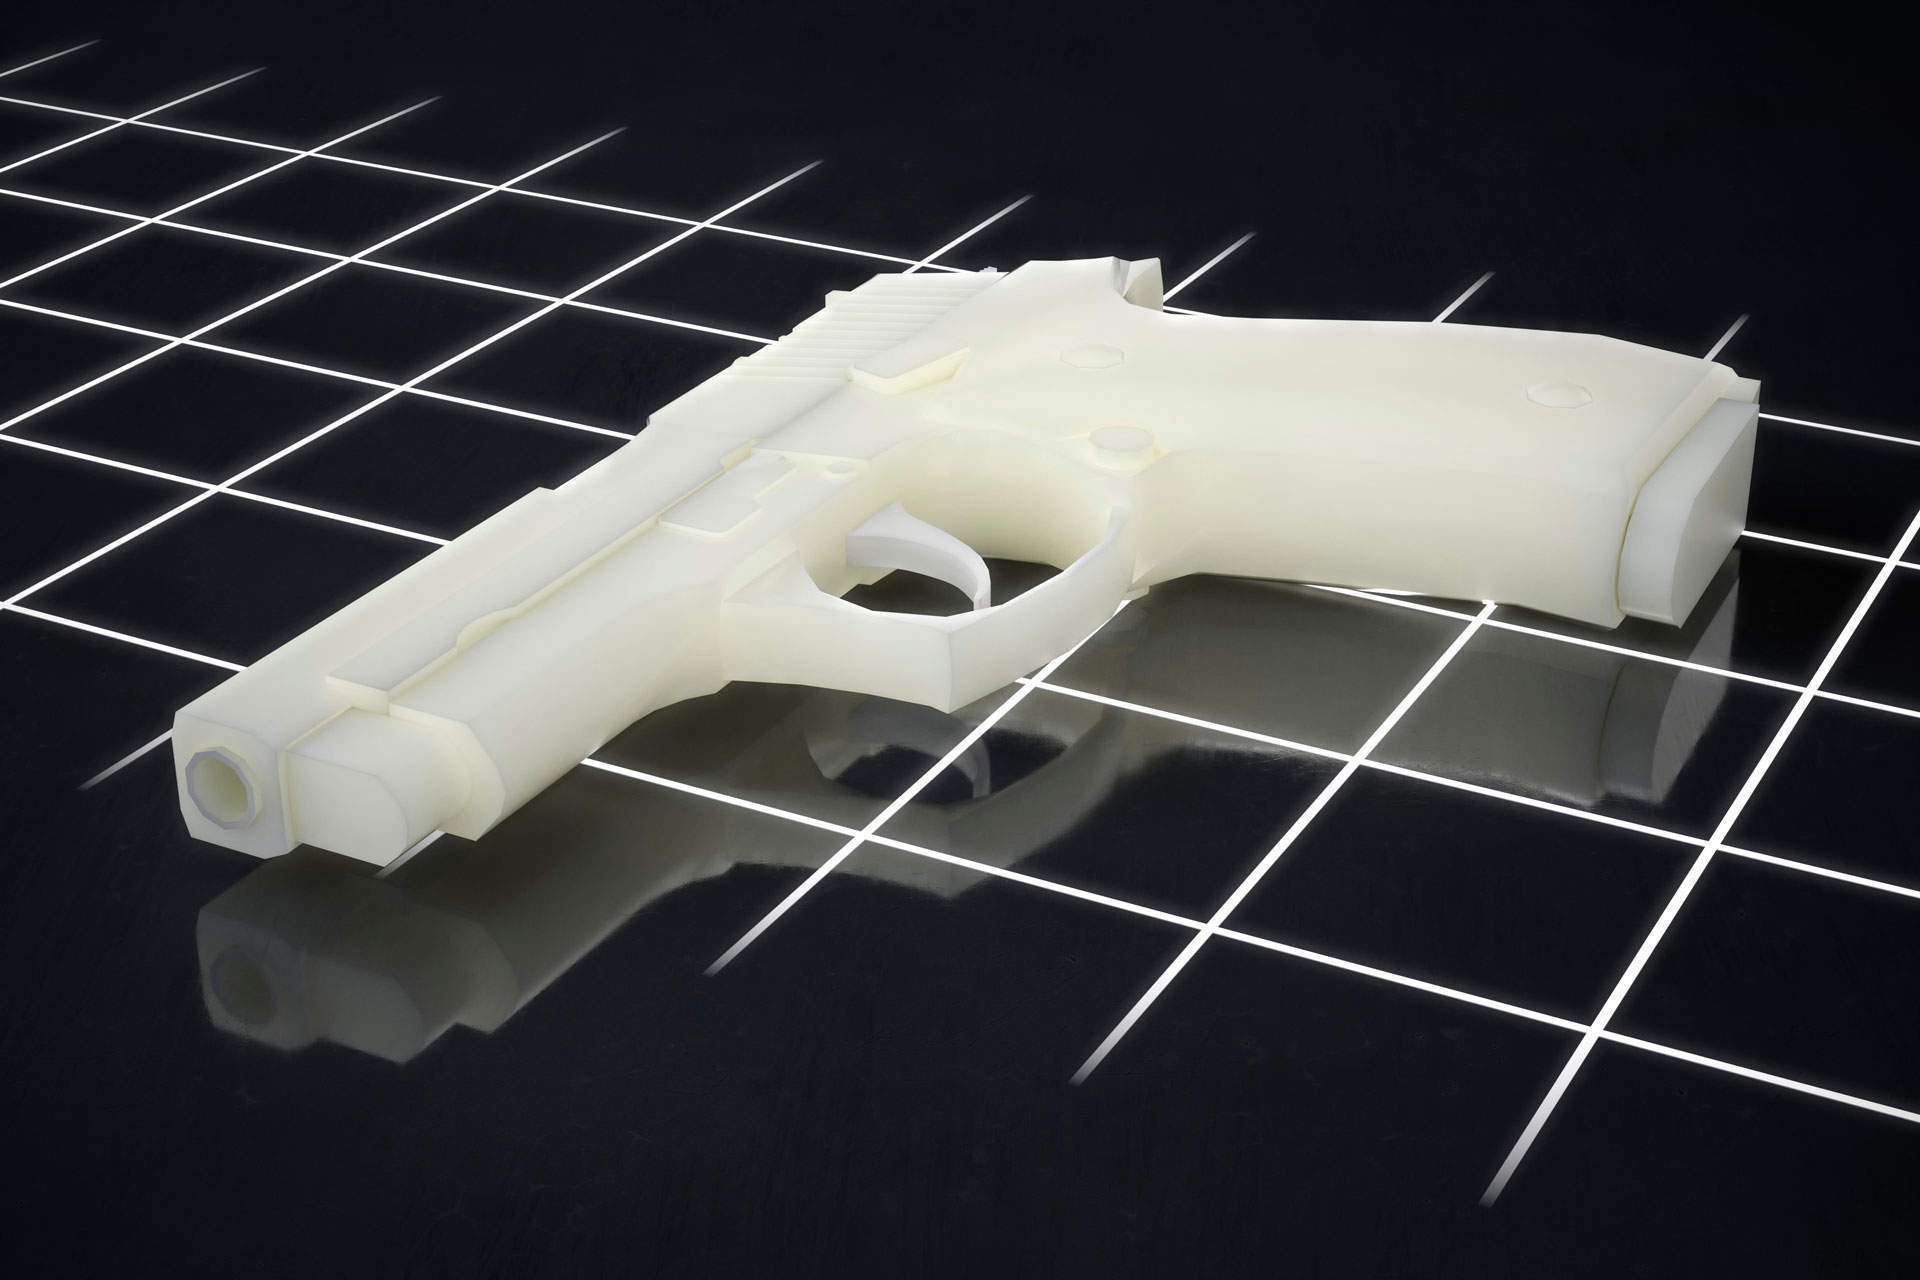 Terorism: Eleva care învăţa cum se construiesc armele cu imprimante 3D